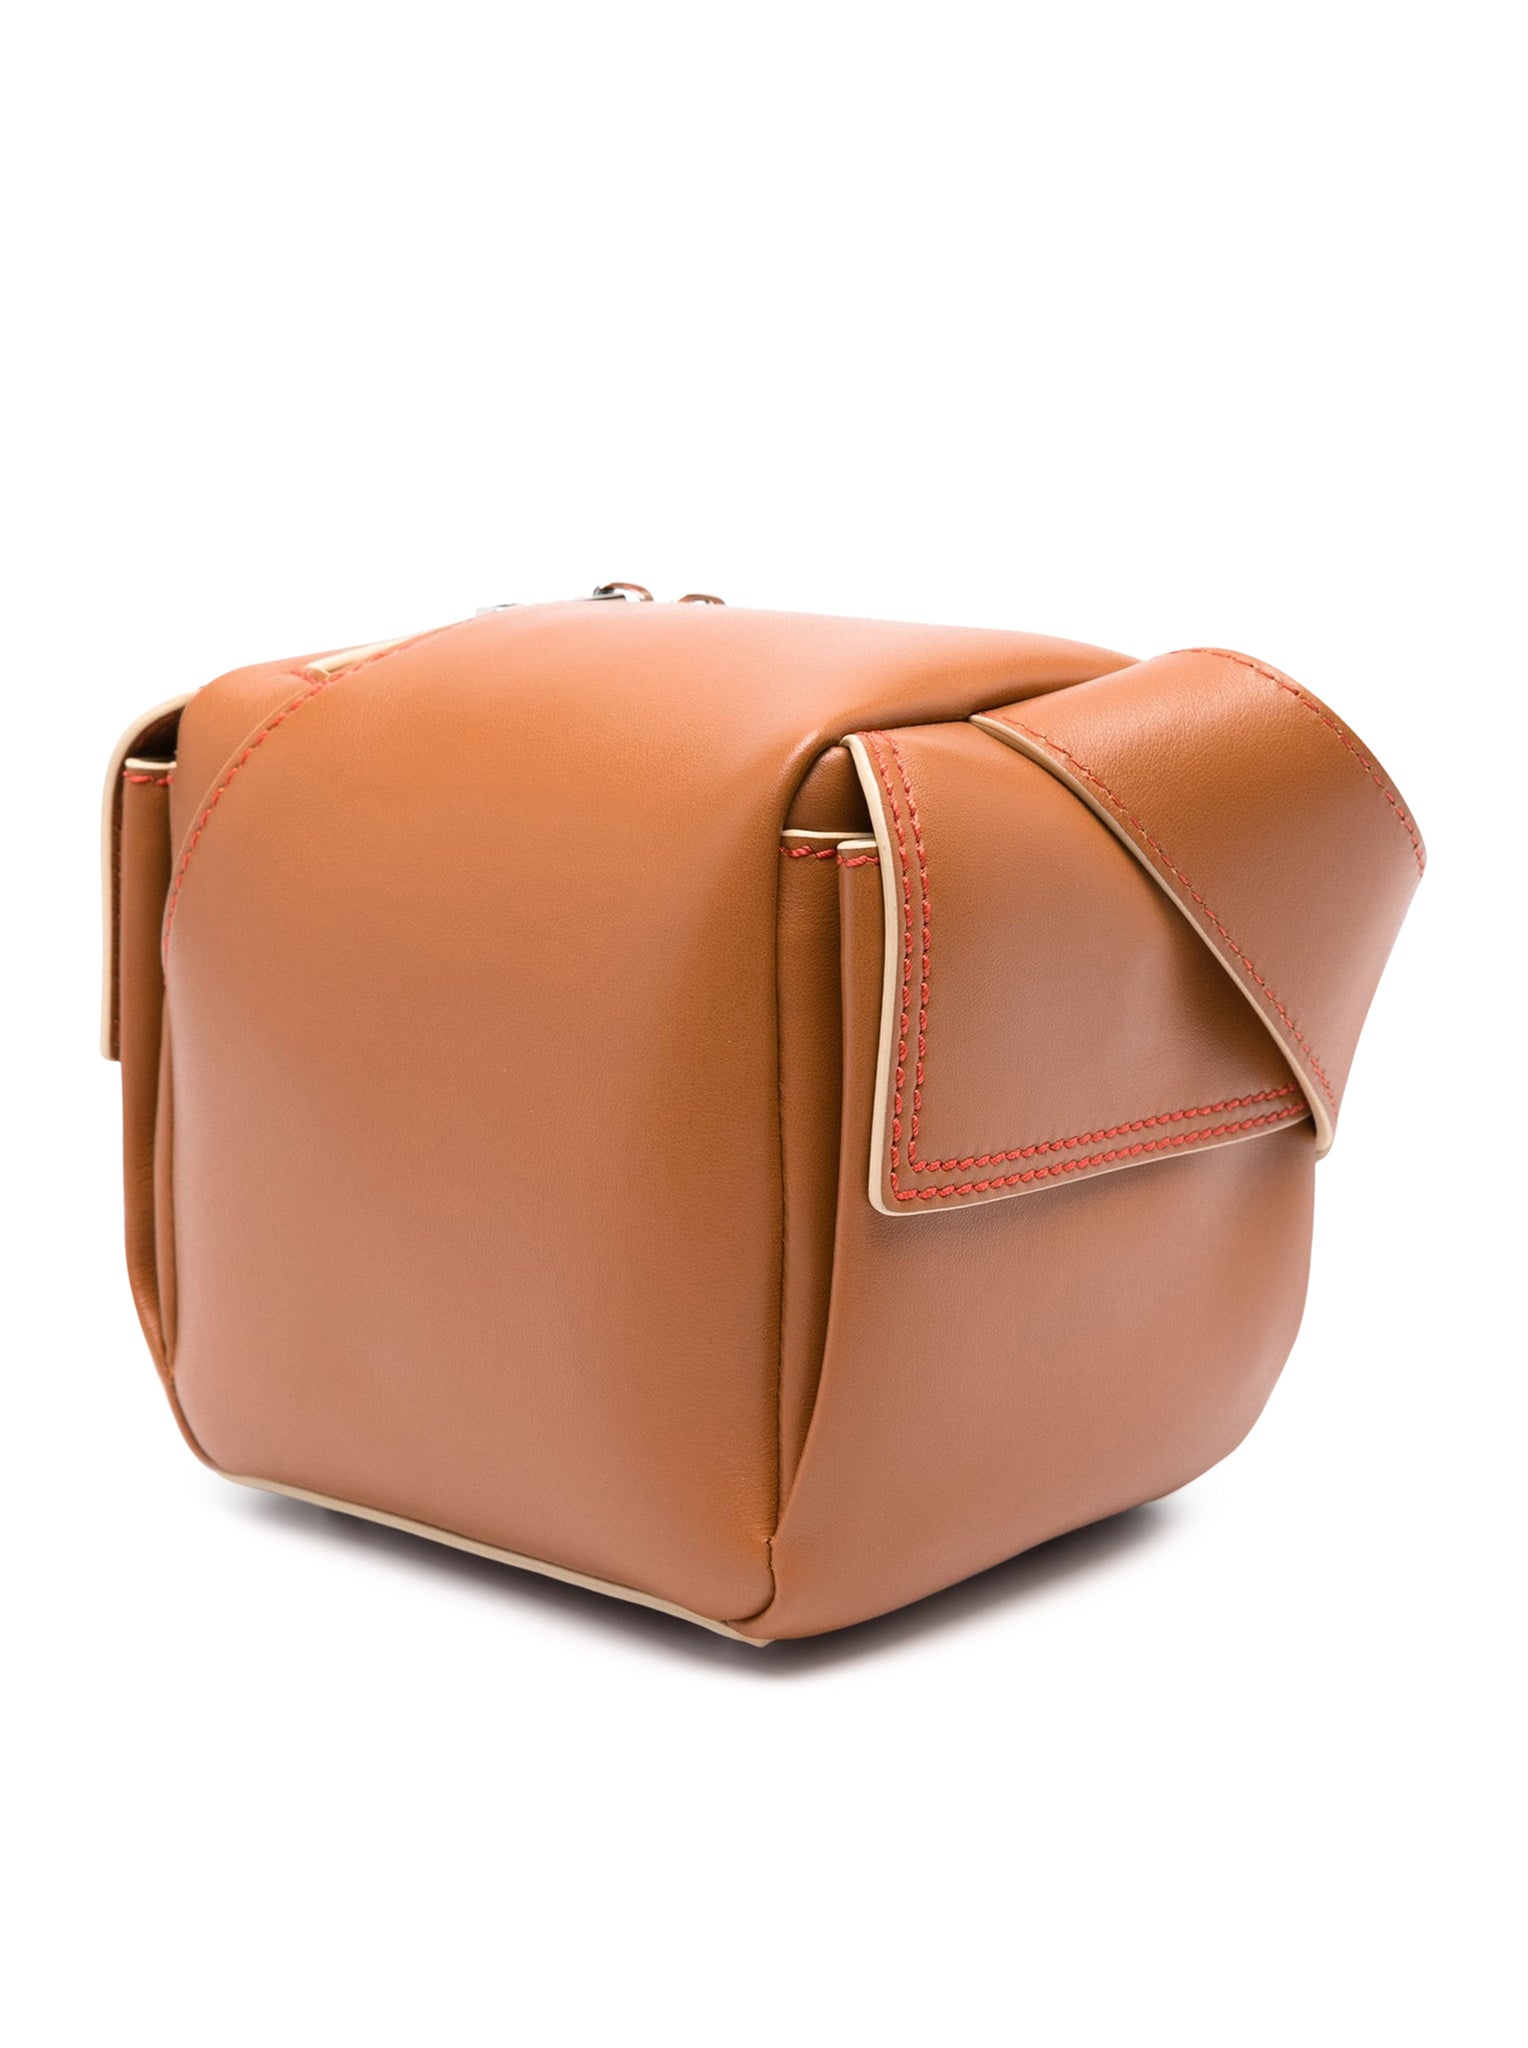 Lacubetto leather shoulder bag